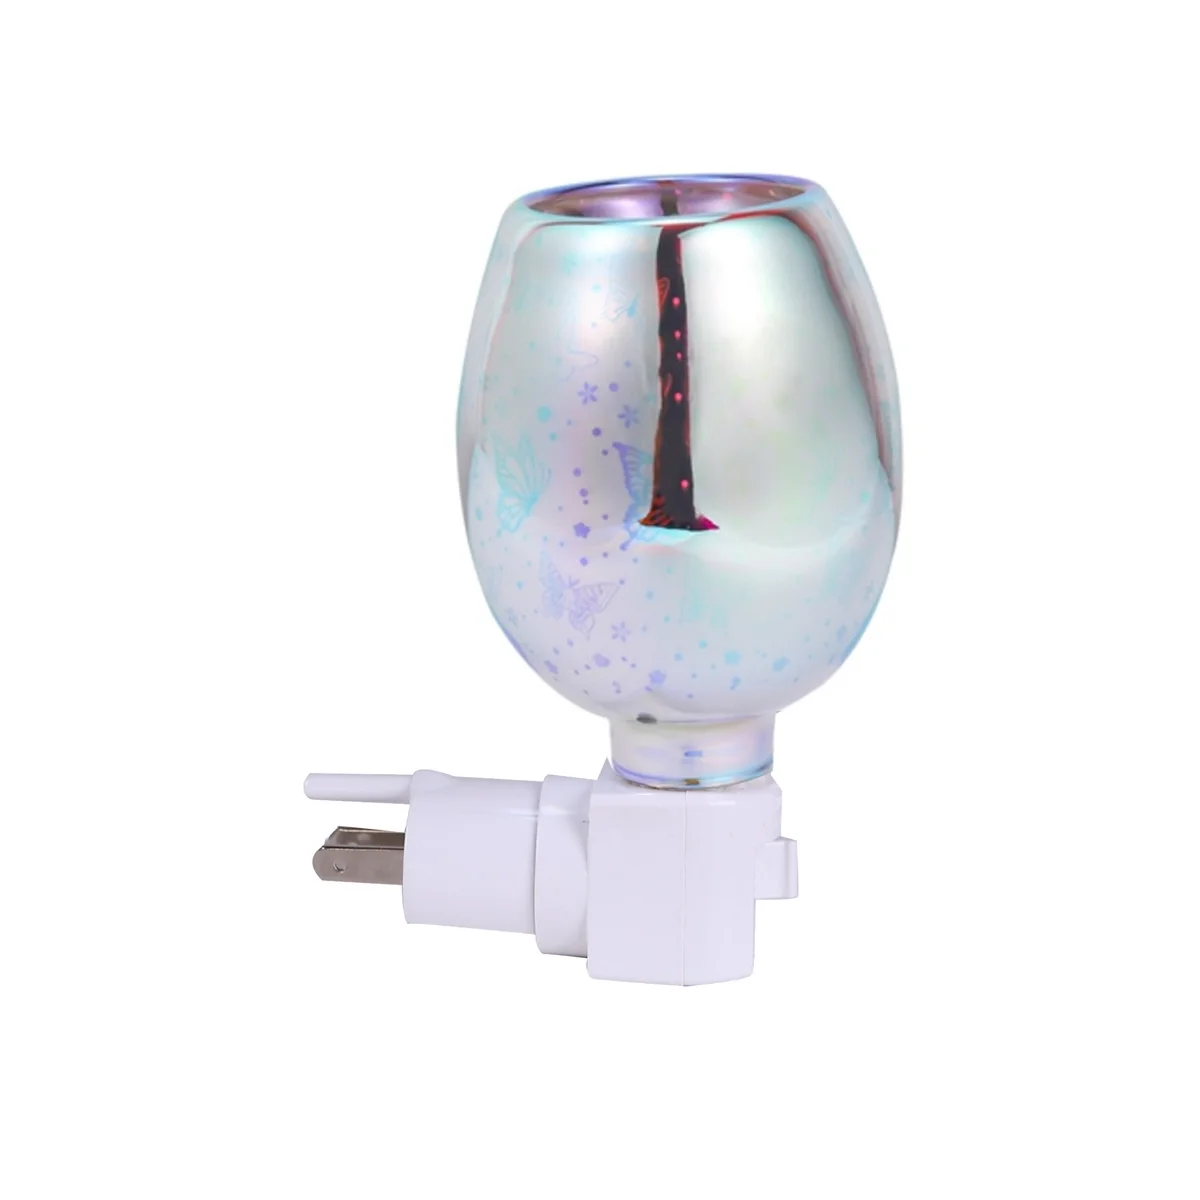 

Электрическая горелка для расплава воска, 3D лампа для ароматерапии, ночник, настенный Декоративный рассеиватель с вилкой Стандарта США